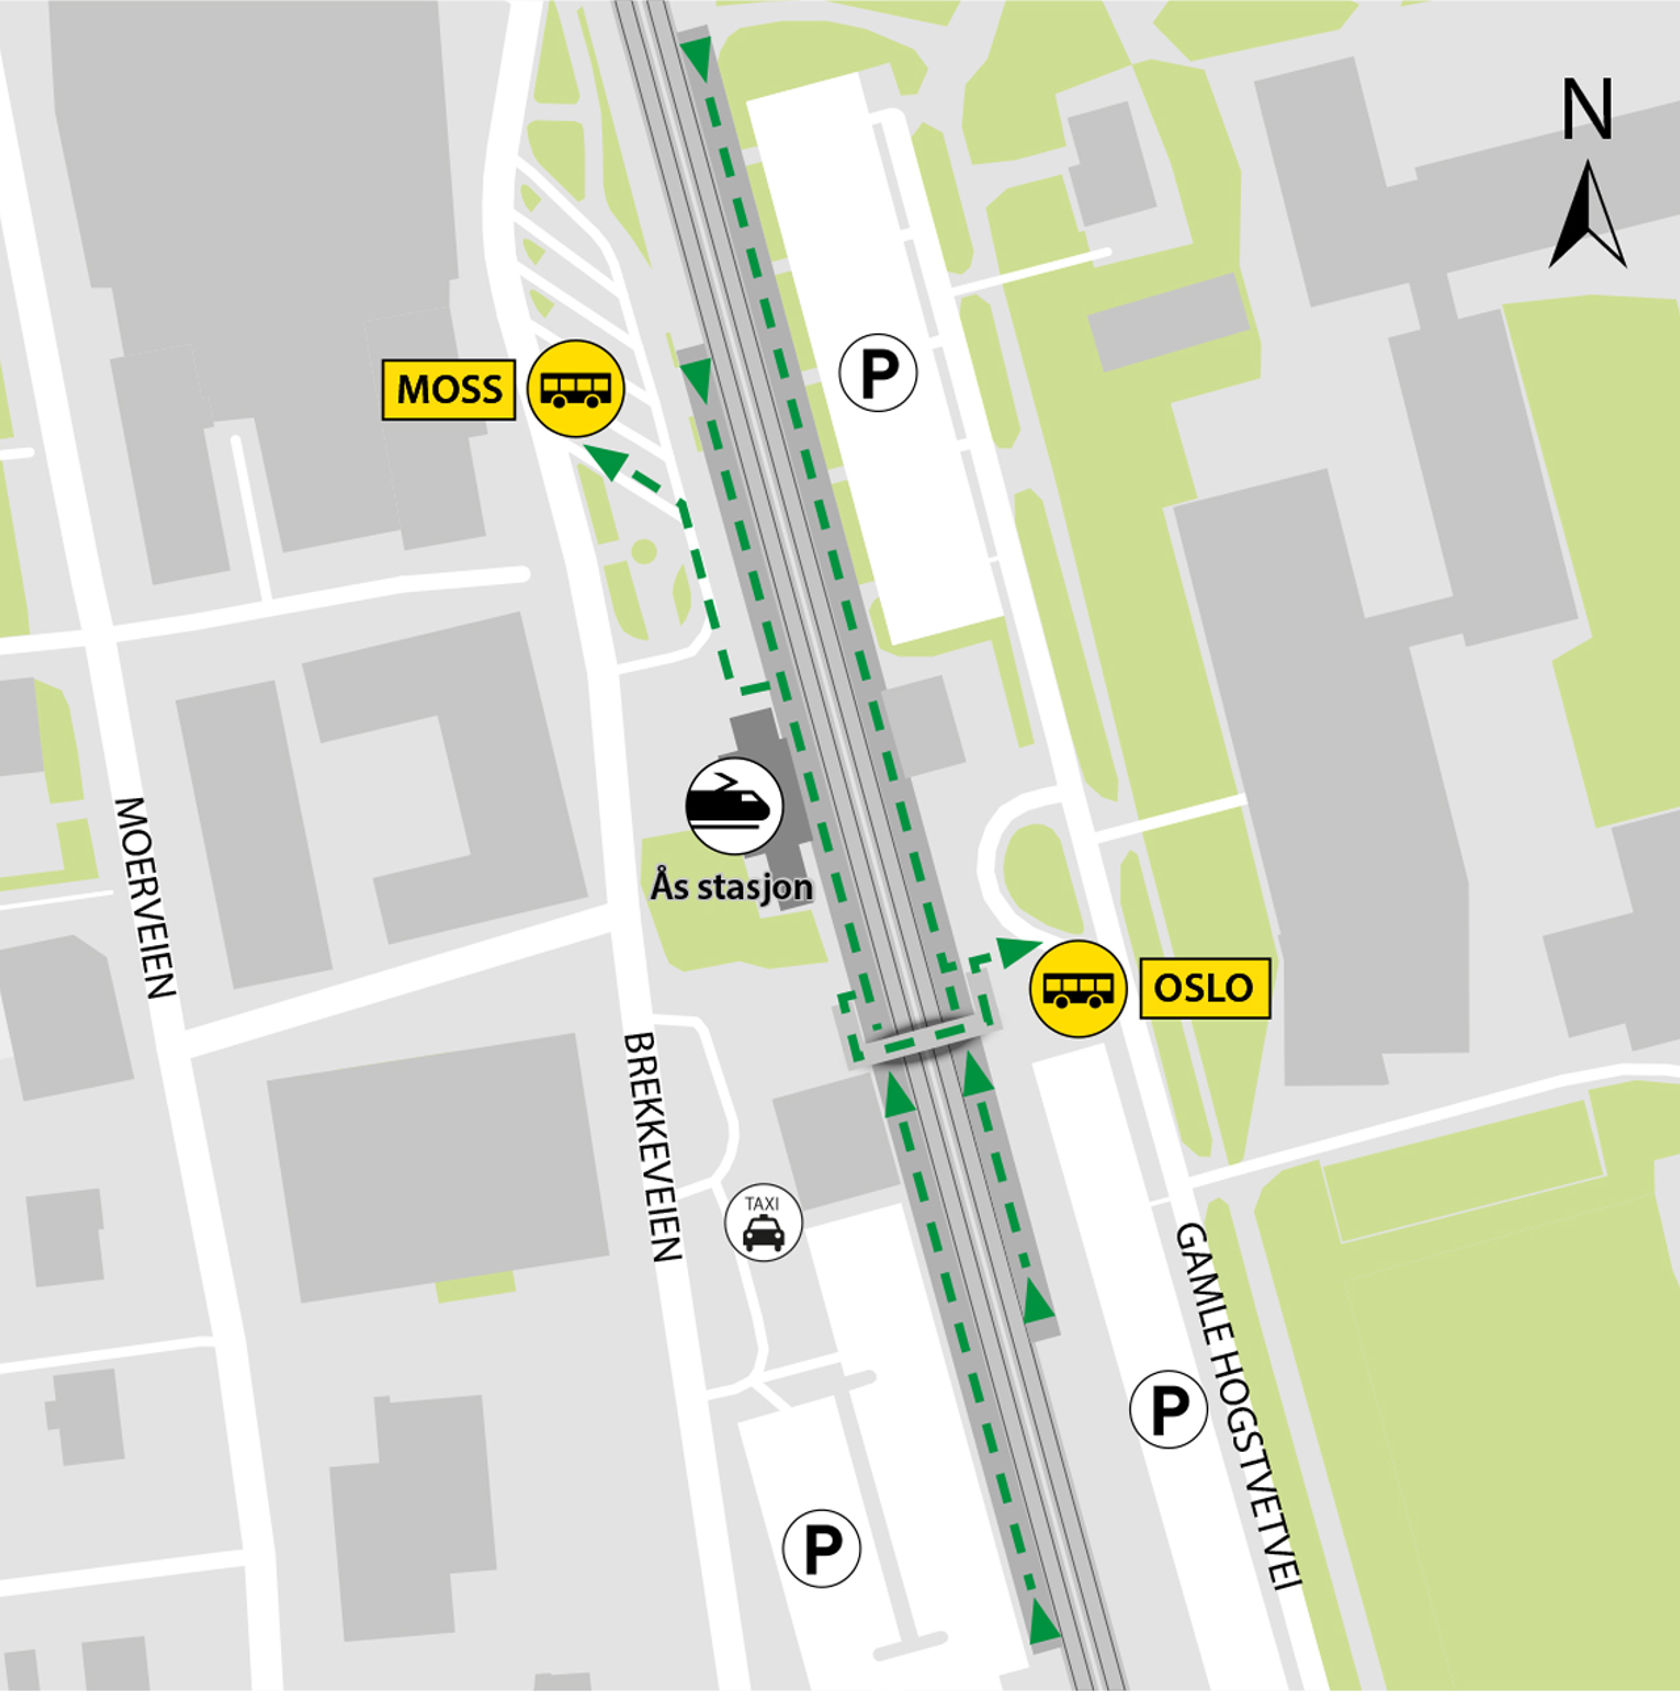 Kartet viser at bussene kjører fra bussholdeplassene Ås stasjon.